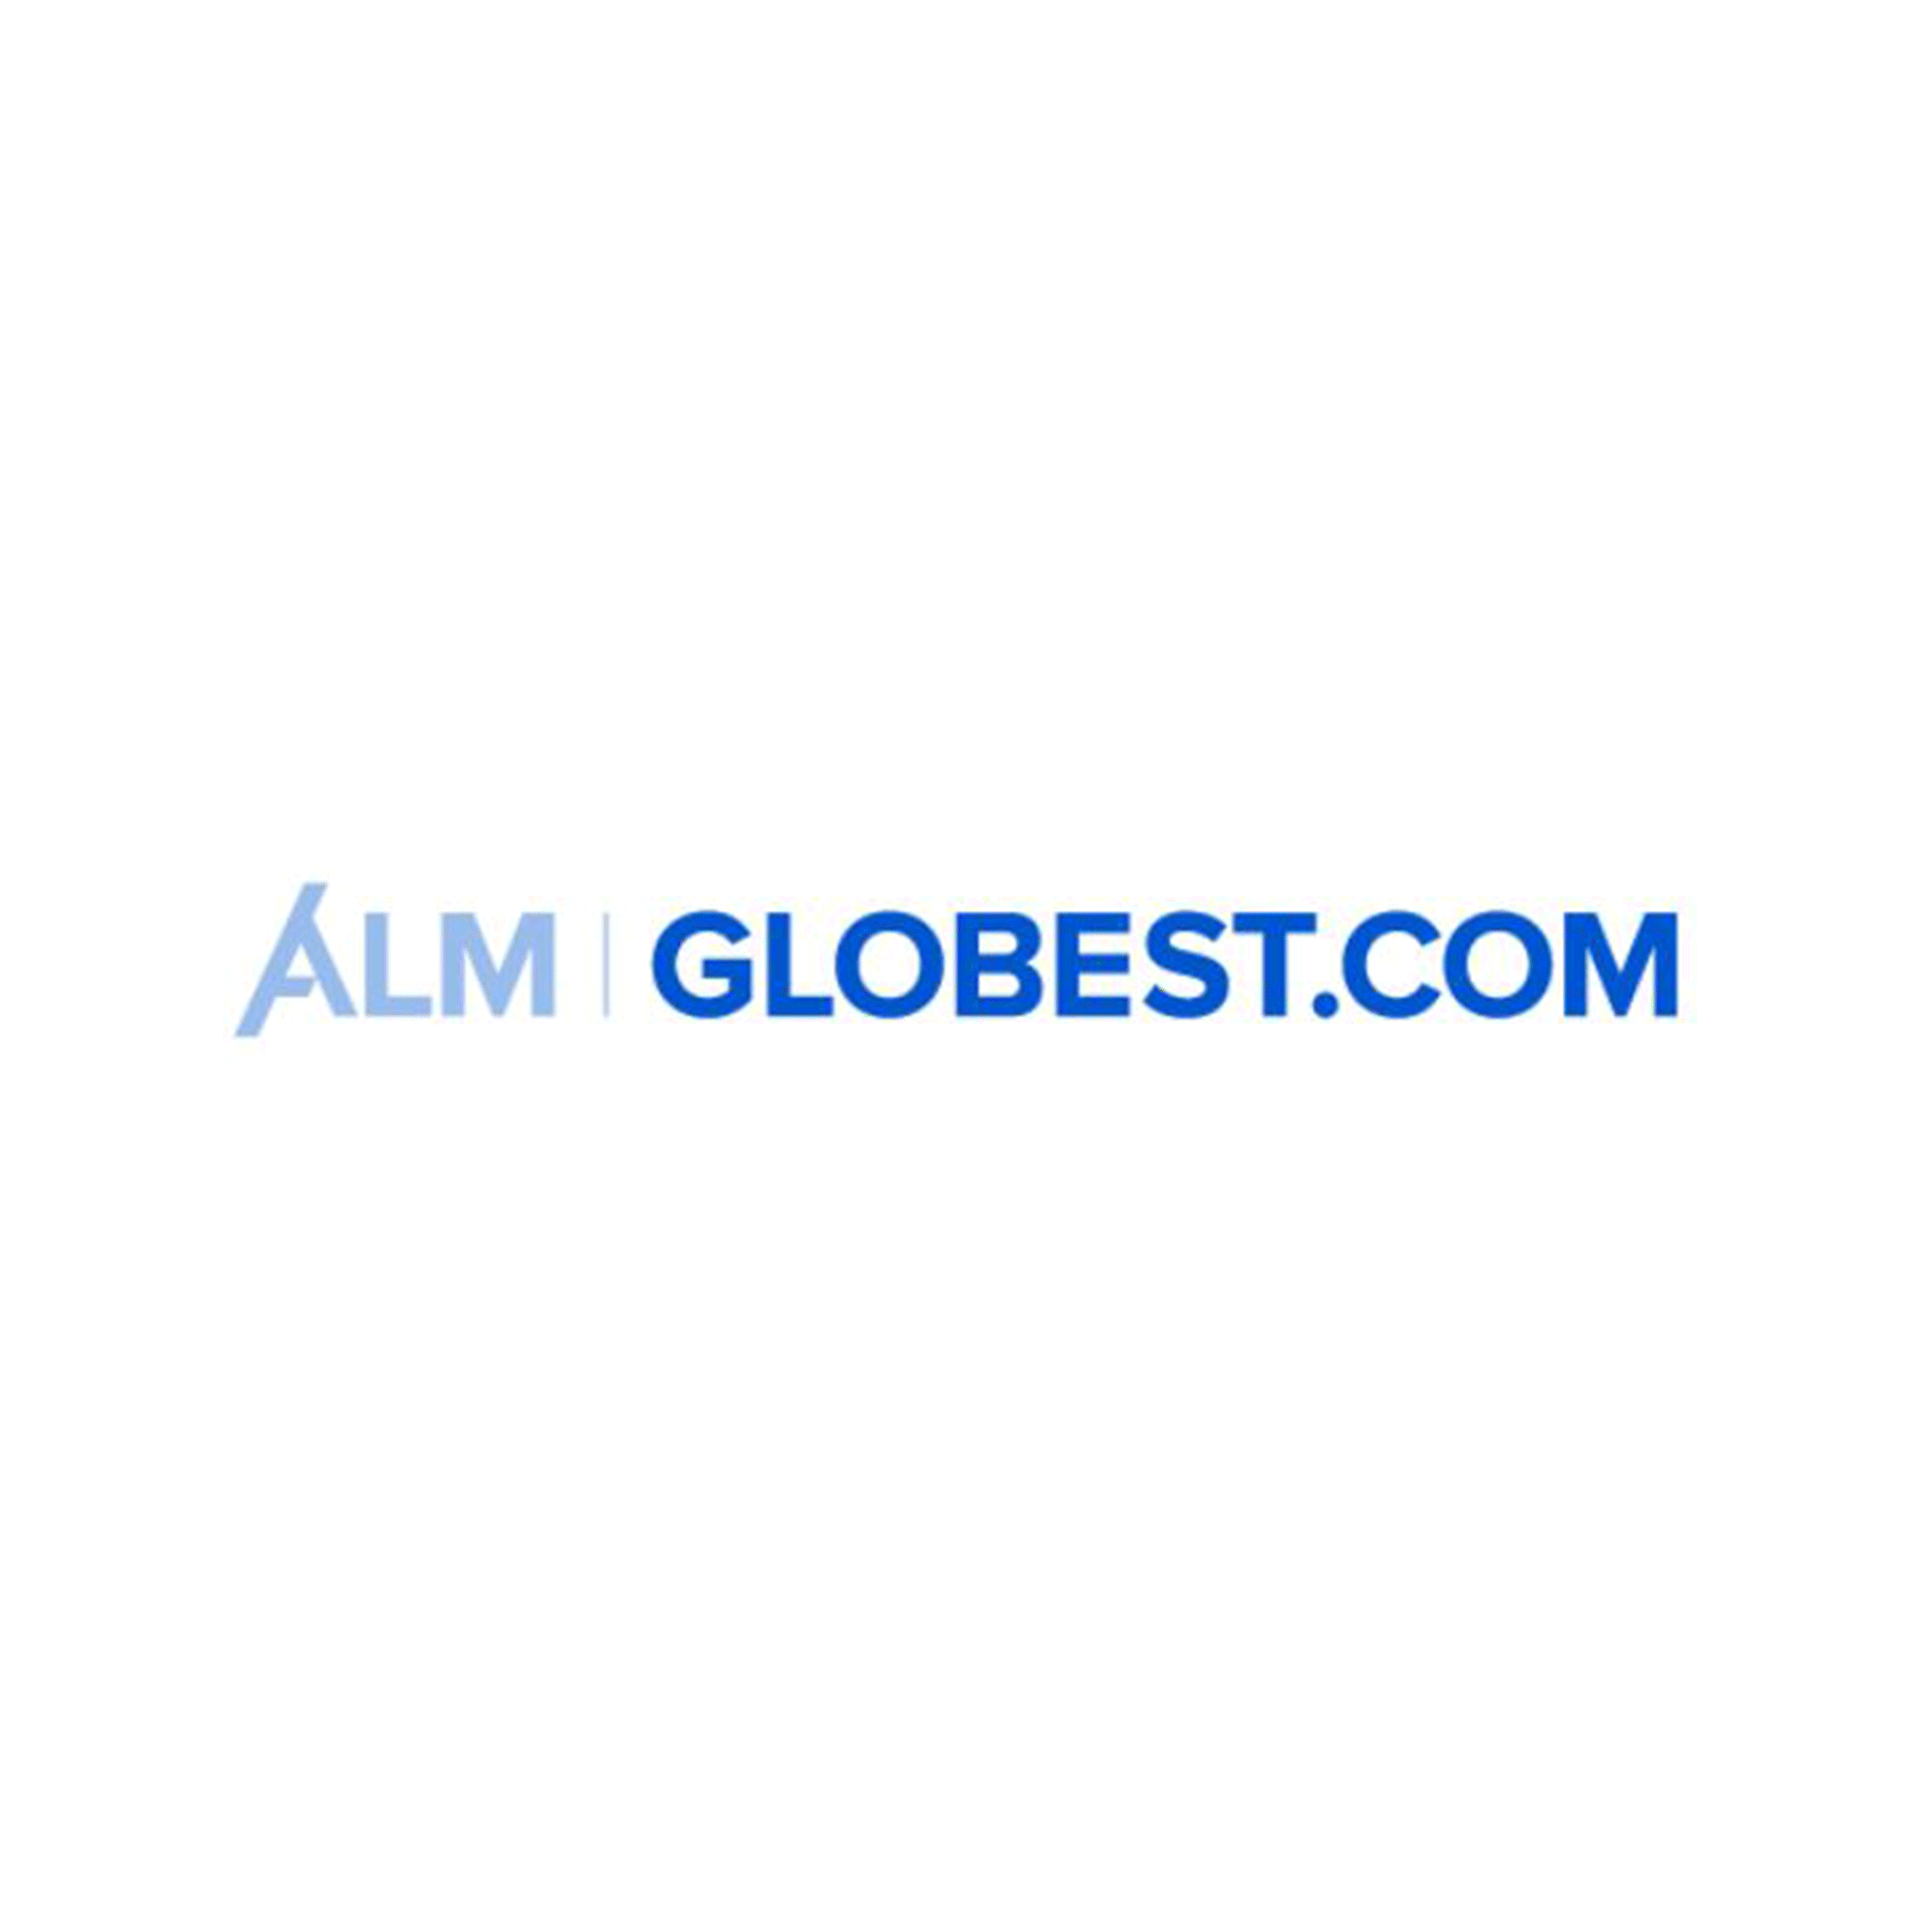 ALM Globest.com logo